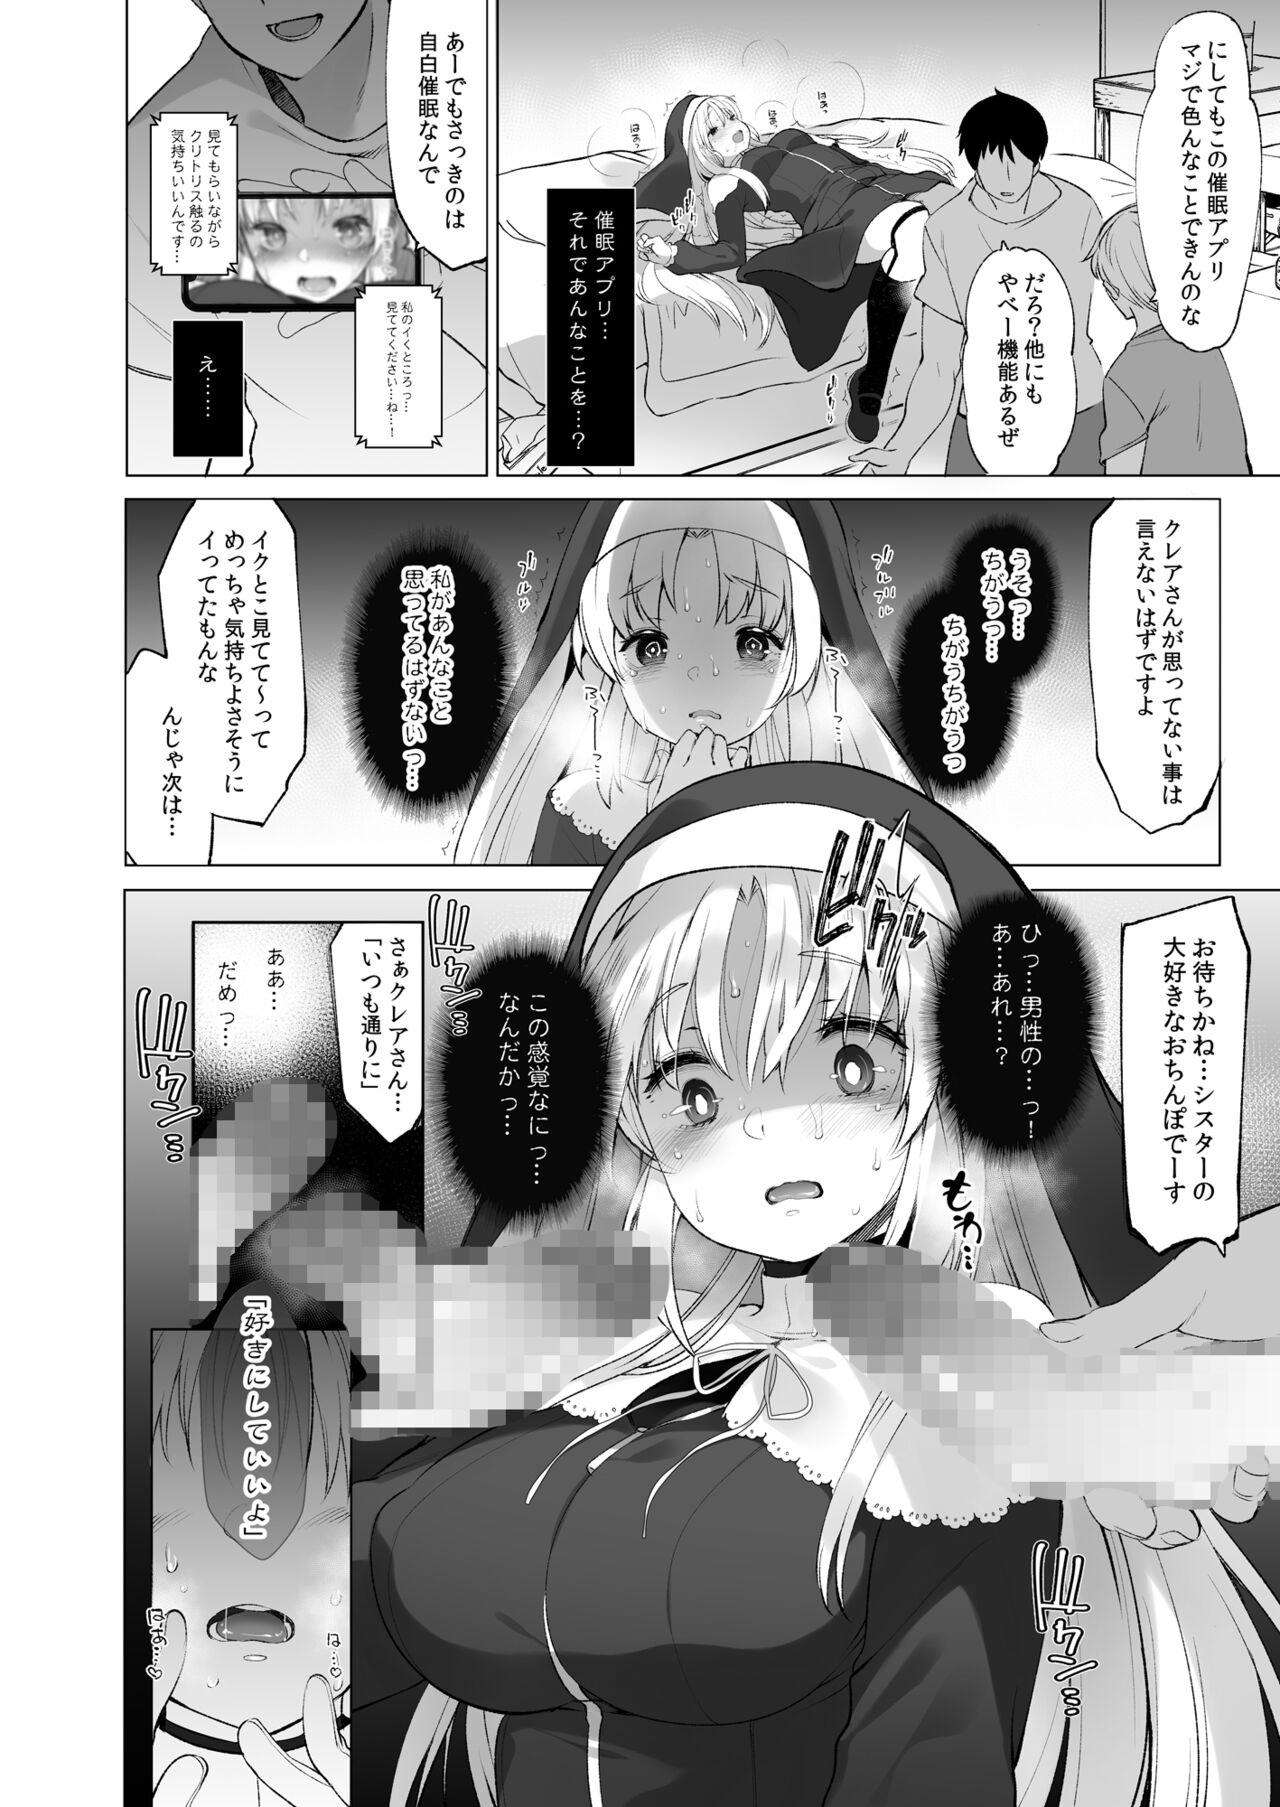 Romantic Sister Cleaire to Himitsu no Saimin Appli 2 - Nijisanji Ikillitts - Page 11